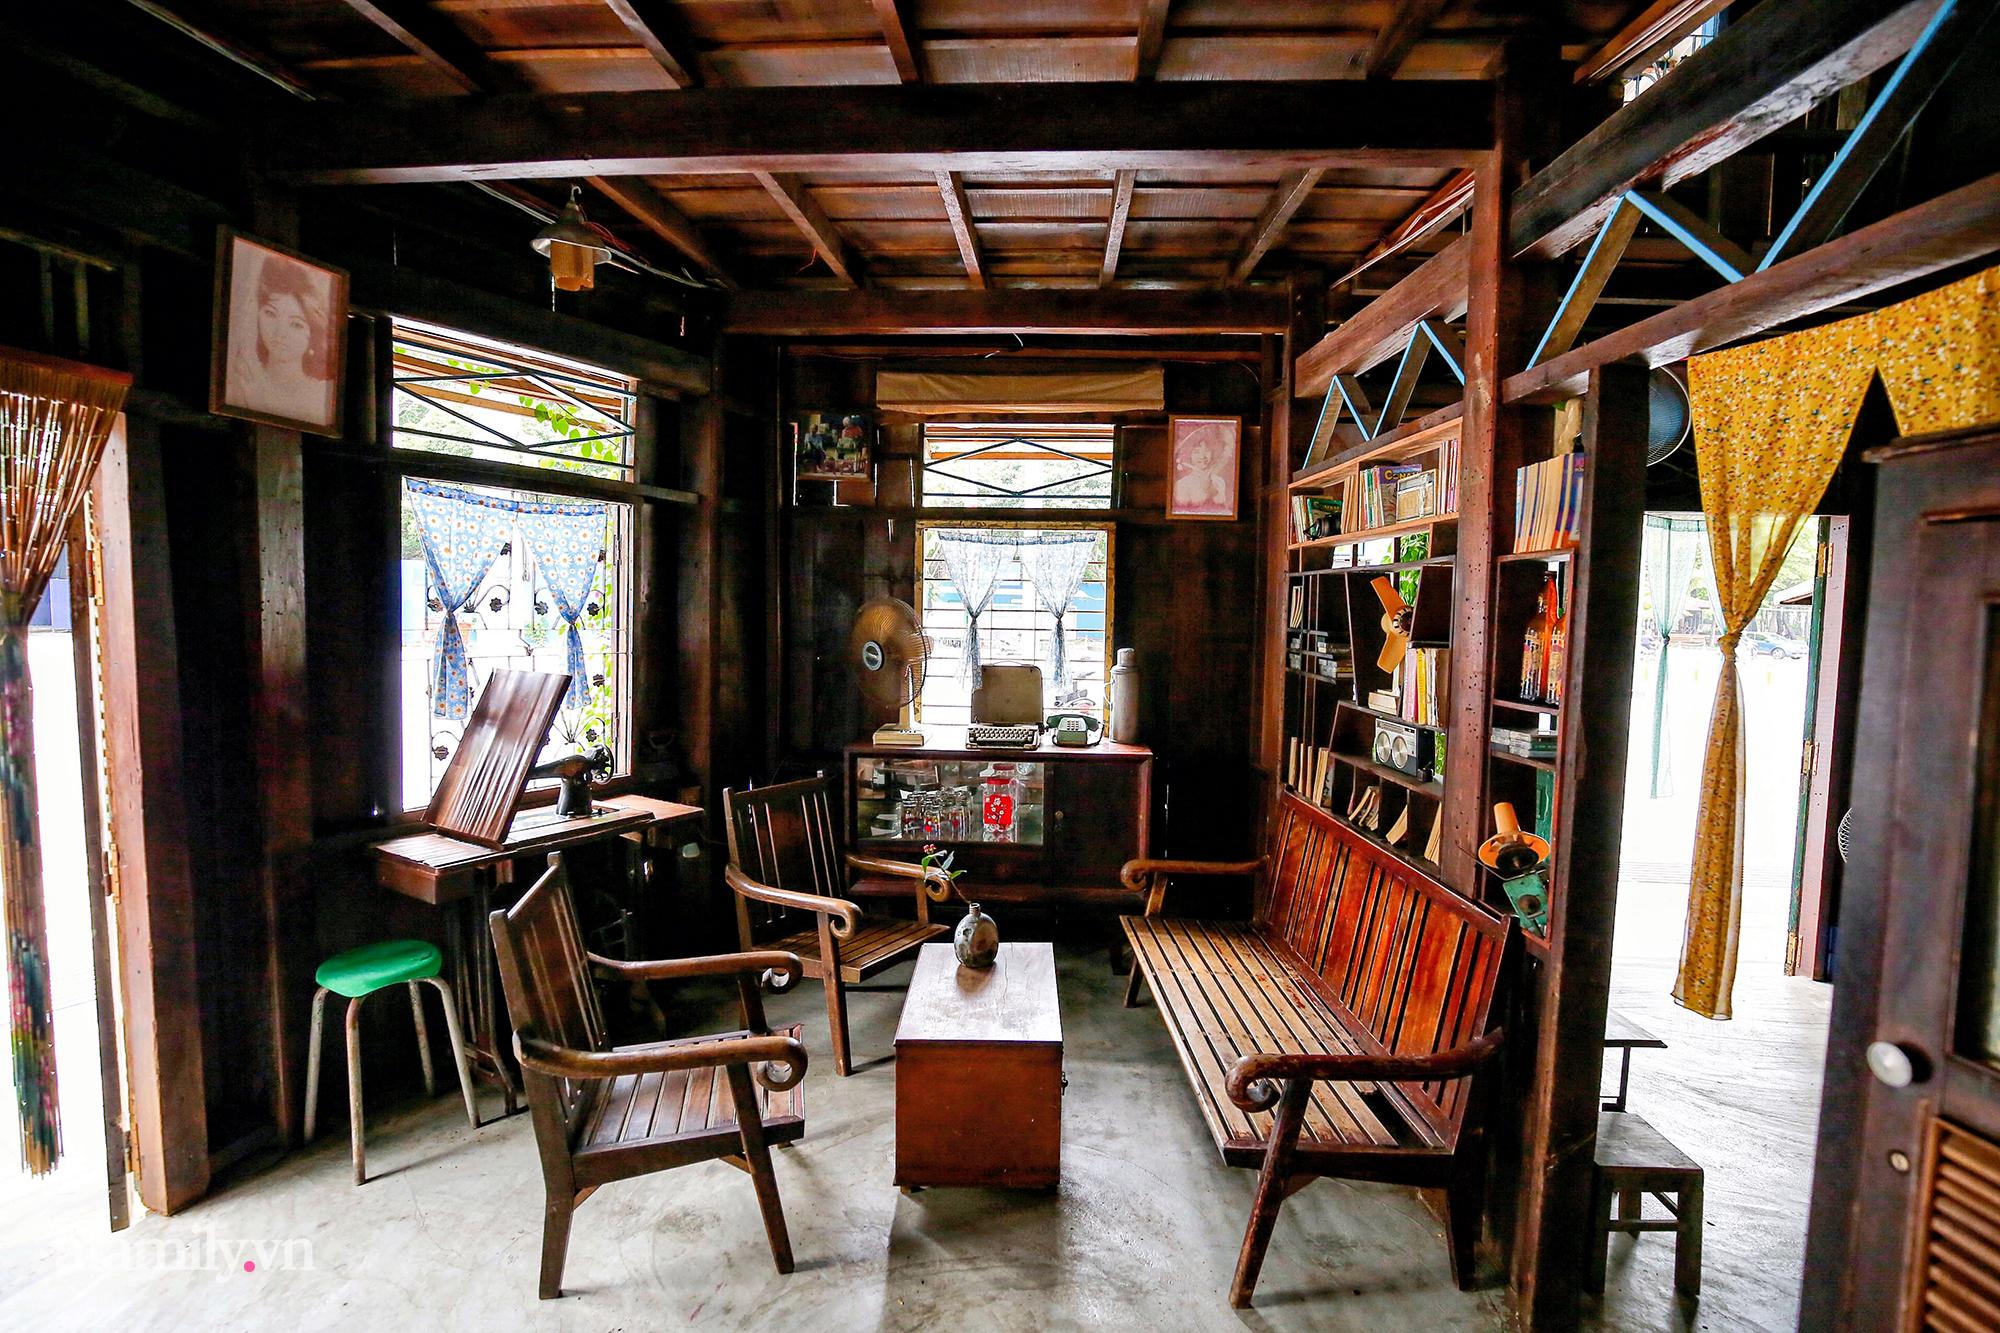 Giữa giao lộ đắt giá quận 1 bất thình lình xuất hiện quán cà phê đậm chất Sài Gòn xưa, hiện là nơi hot đến không tưởng, được check in khắp mạng xã hội - Ảnh 9.